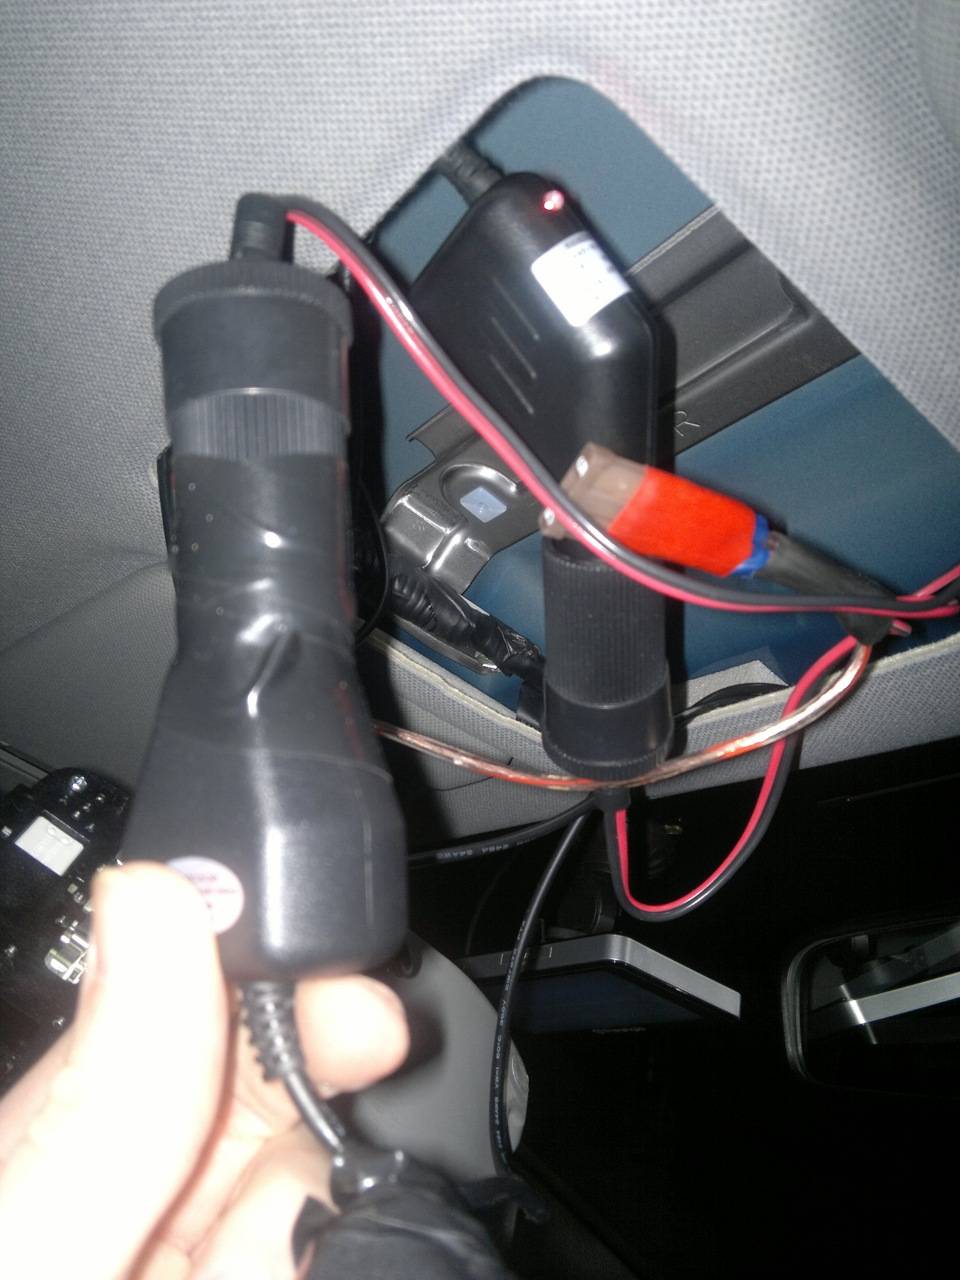 Как подключить видеорегистратор в машине без использования прикуривателя и проводов